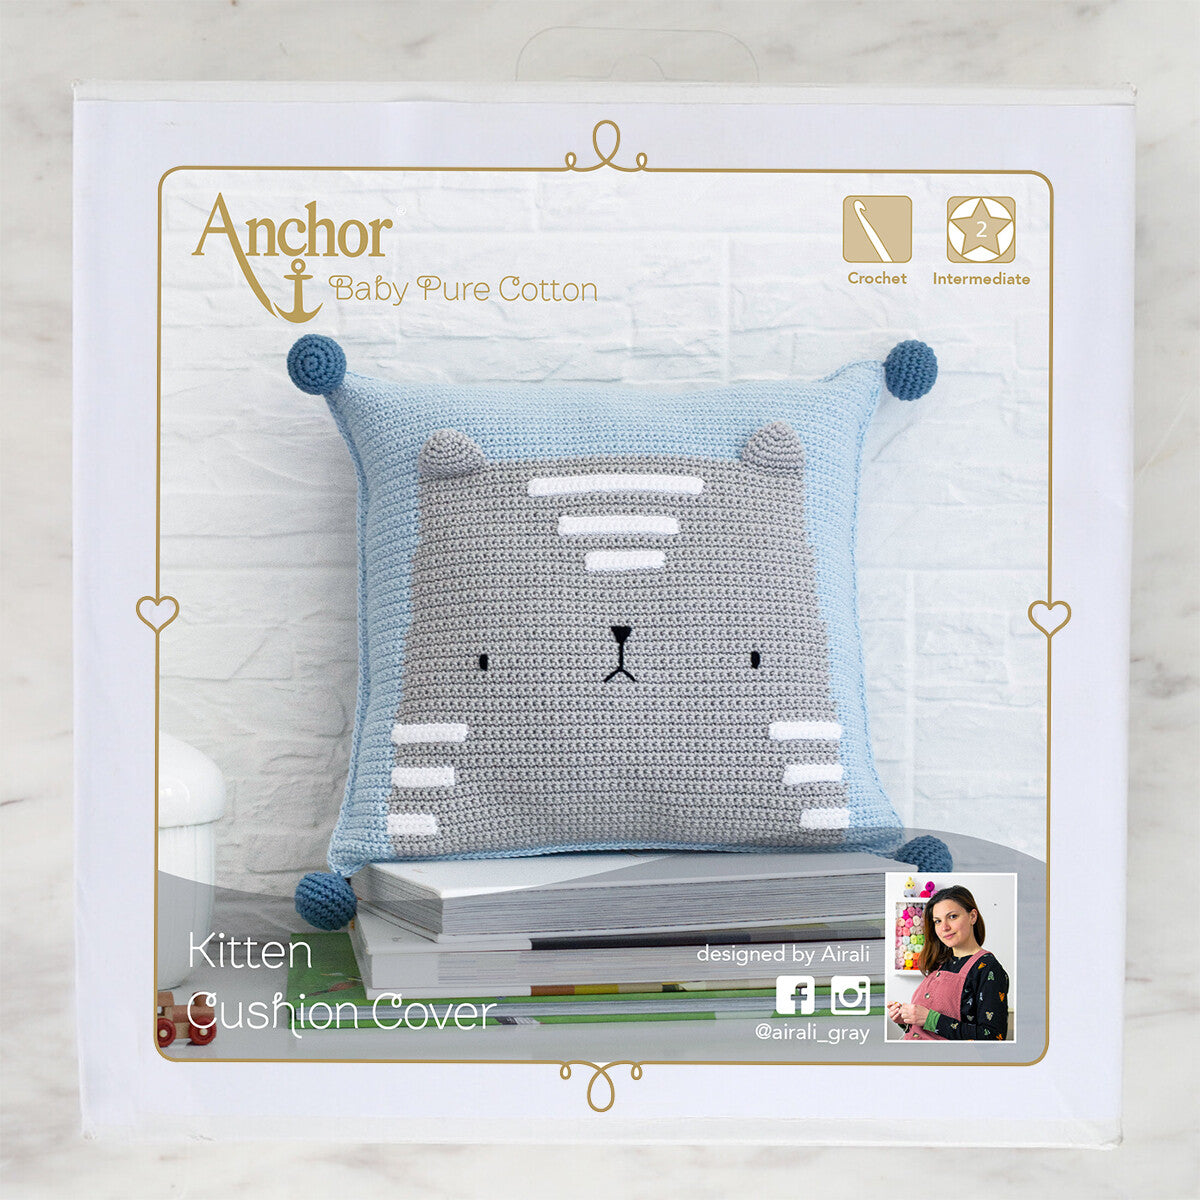 Anchor Kitten Cushion Cover Set - A28B003-09066